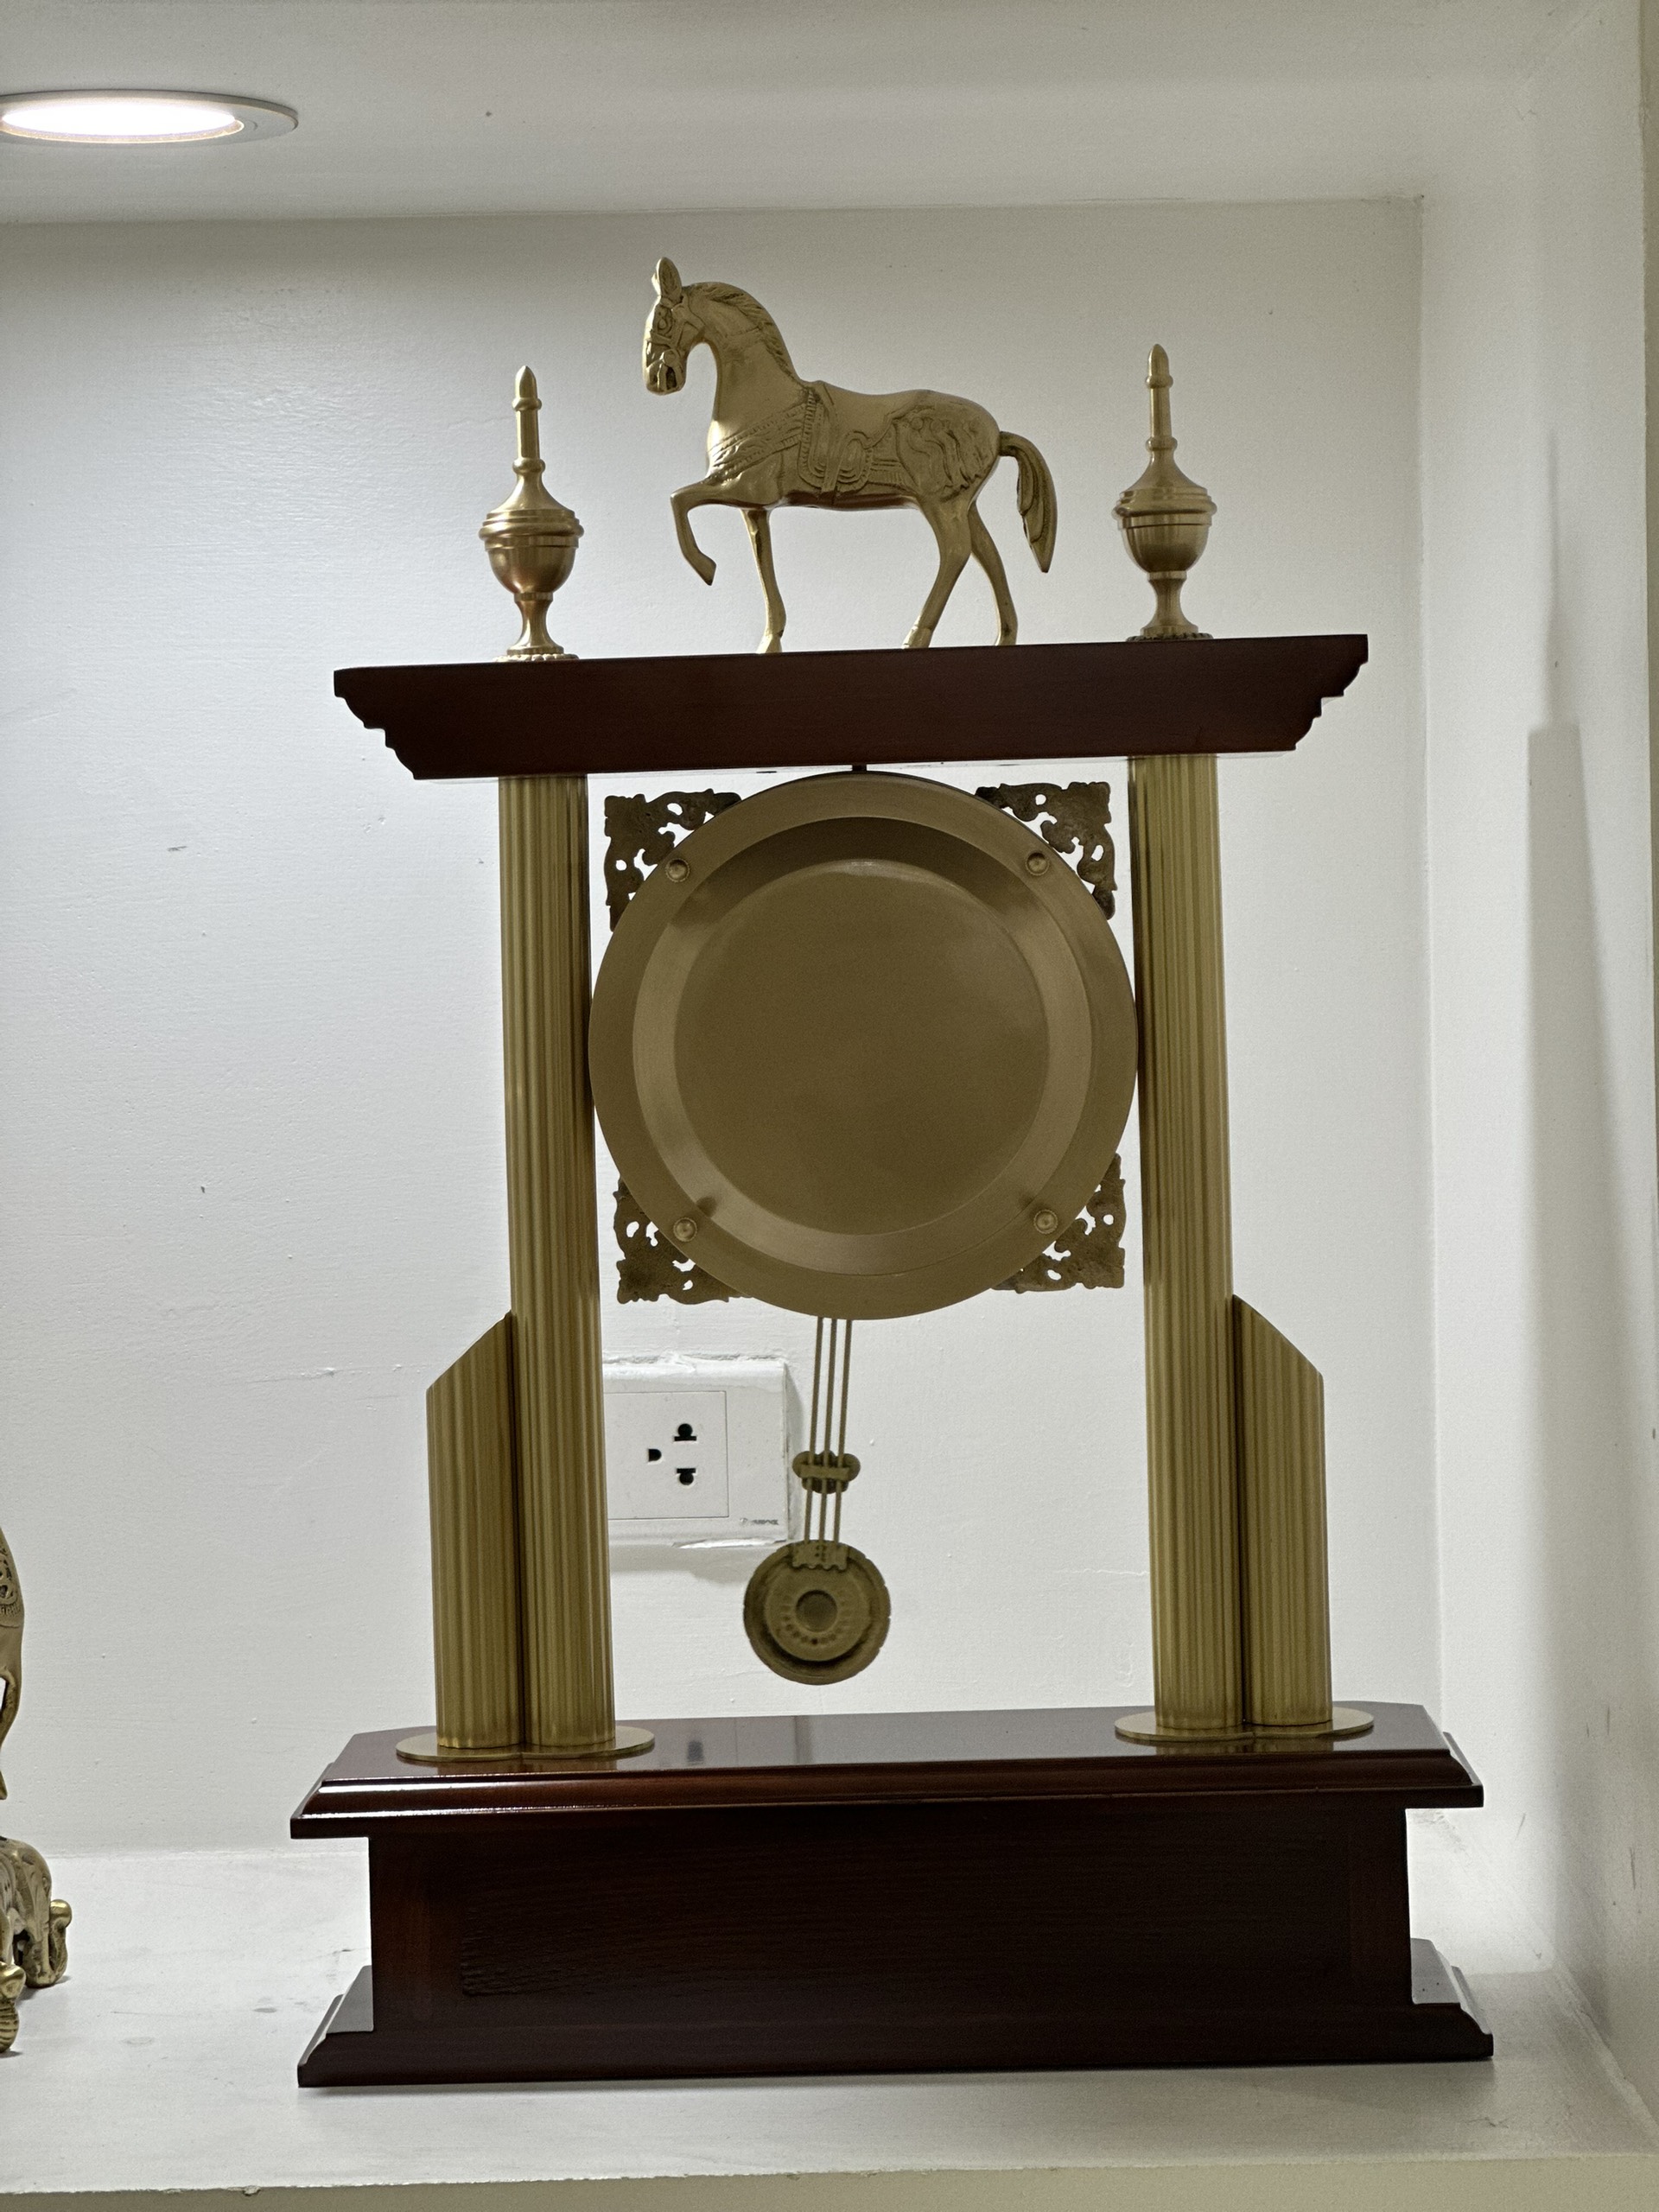 Đồng hồ để bàn con ngựa mang phong cách tân cổ điển sang trọng DH41GO